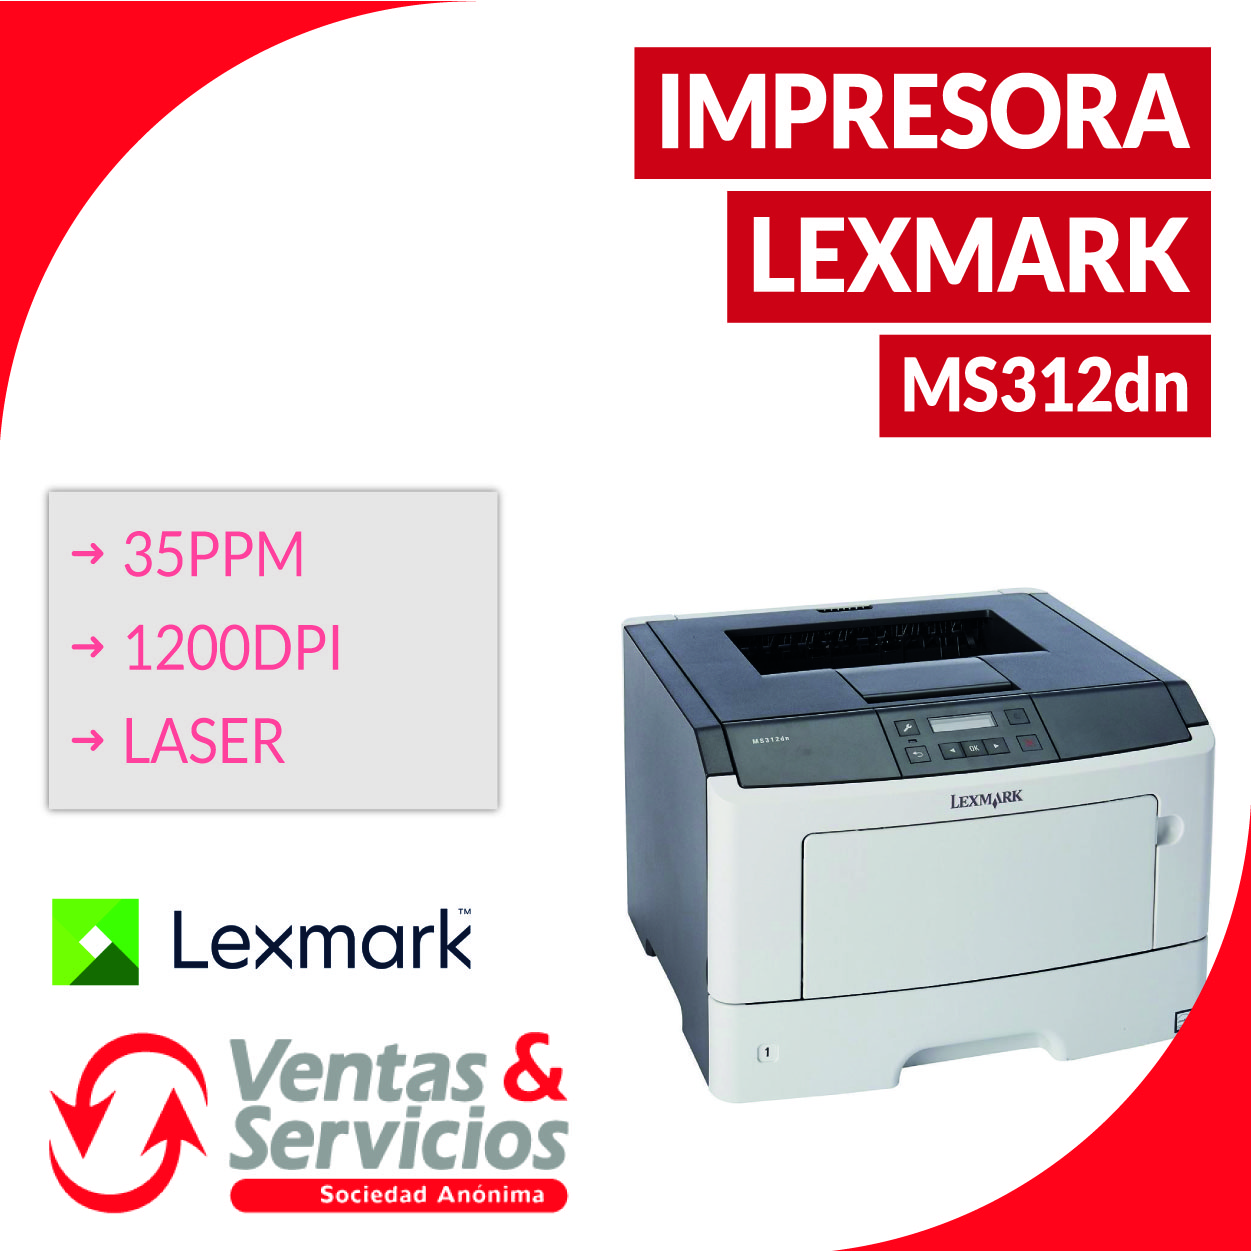 Lexmark ms312dn